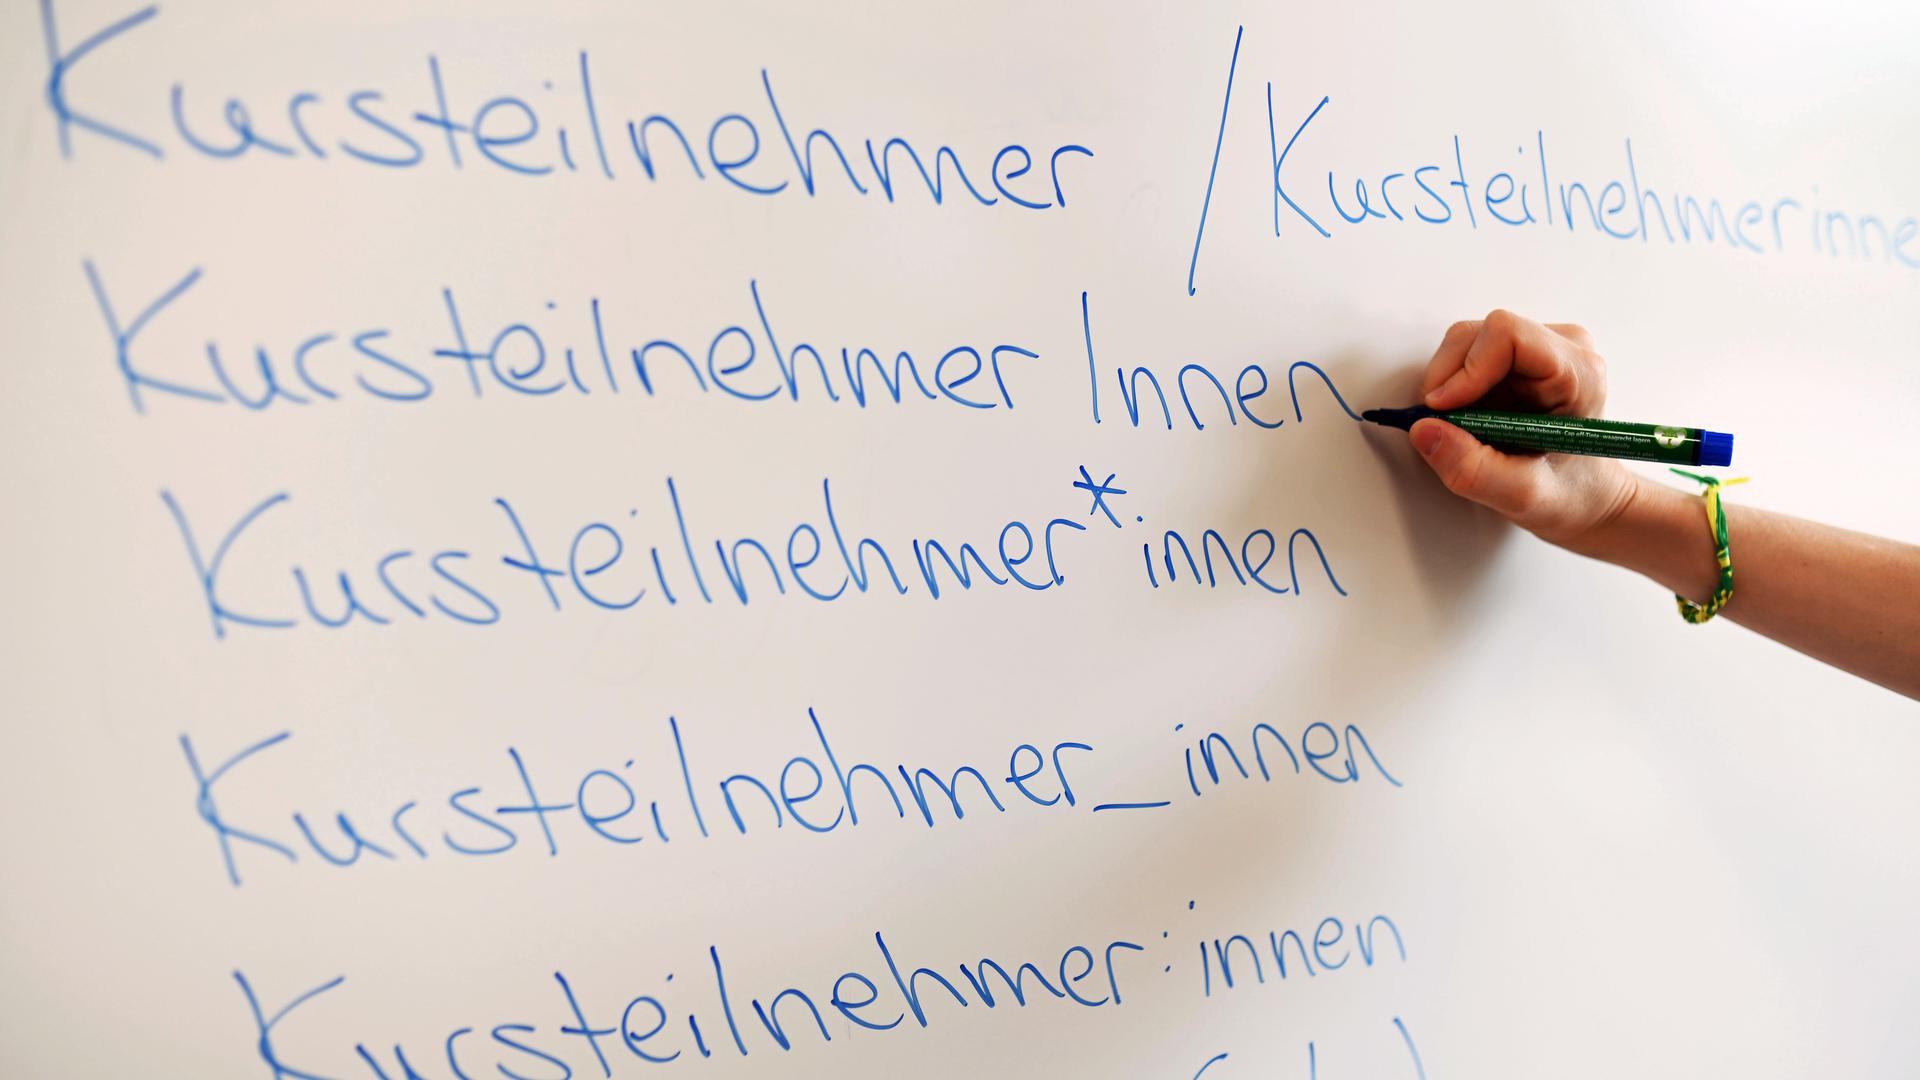 In der Volkshochschule (VHS) Karlsruhe steht an einem Whiteboard das Wort Kursteilnehmer in verschiedenen Gender-Schreibweisen.